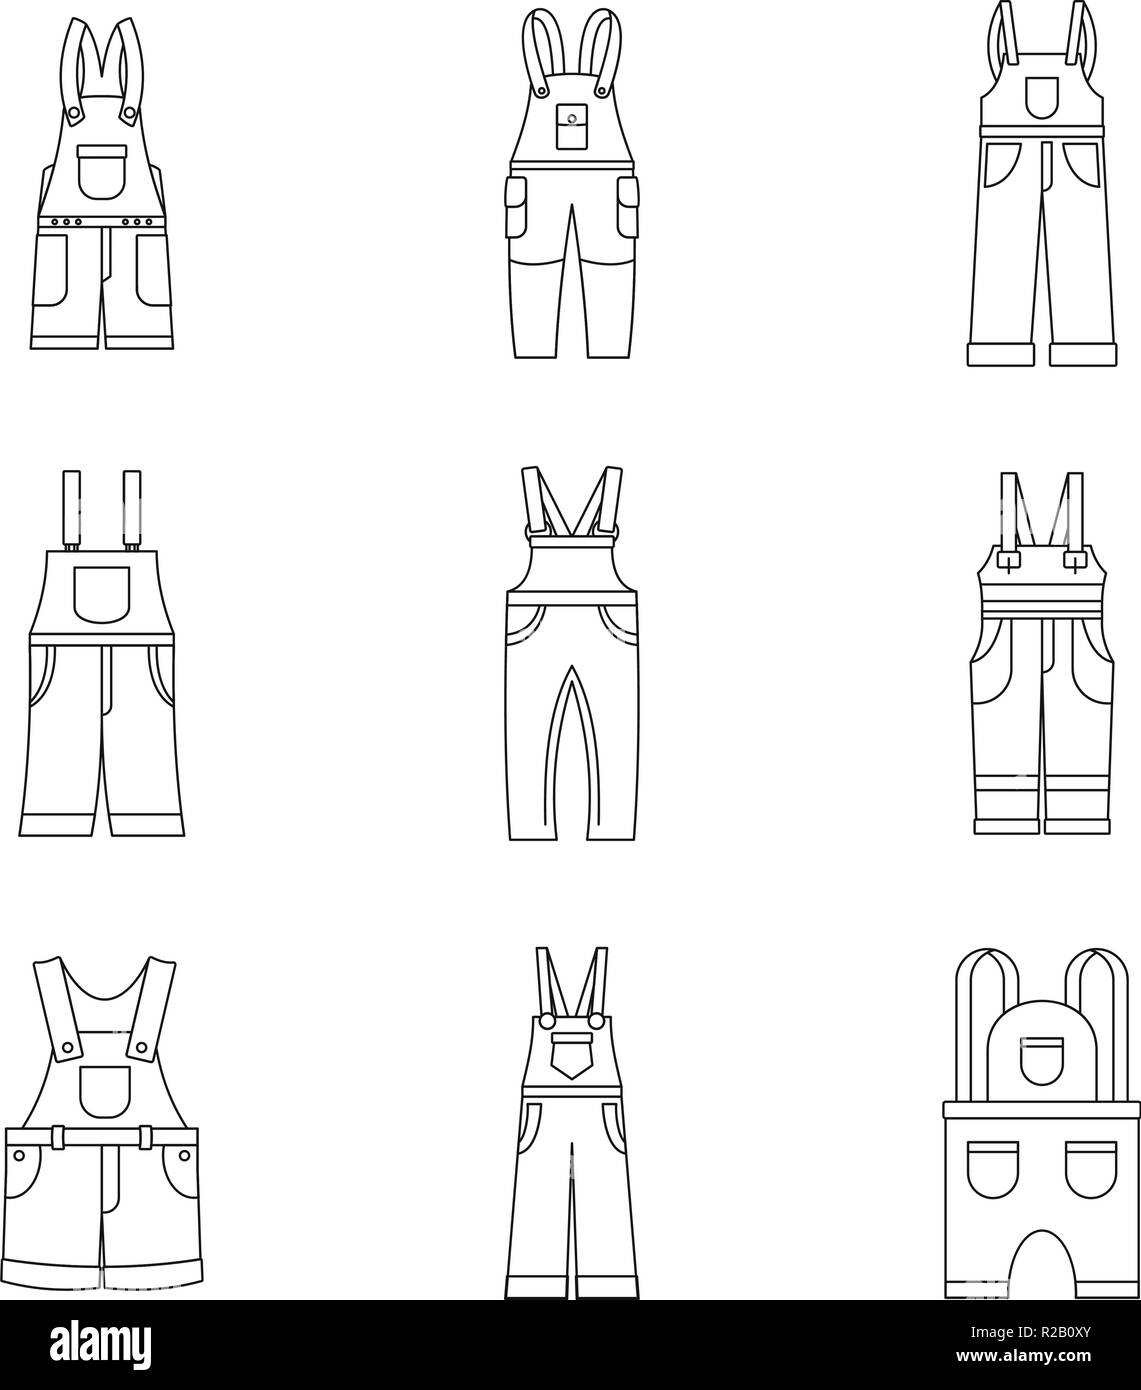 Overalls Arbeitskleidung Symbole gesetzt. Einfache Abbildung: 9 Latzhosen Berufsbekleidung Vector Icons für Web Stock Vektor